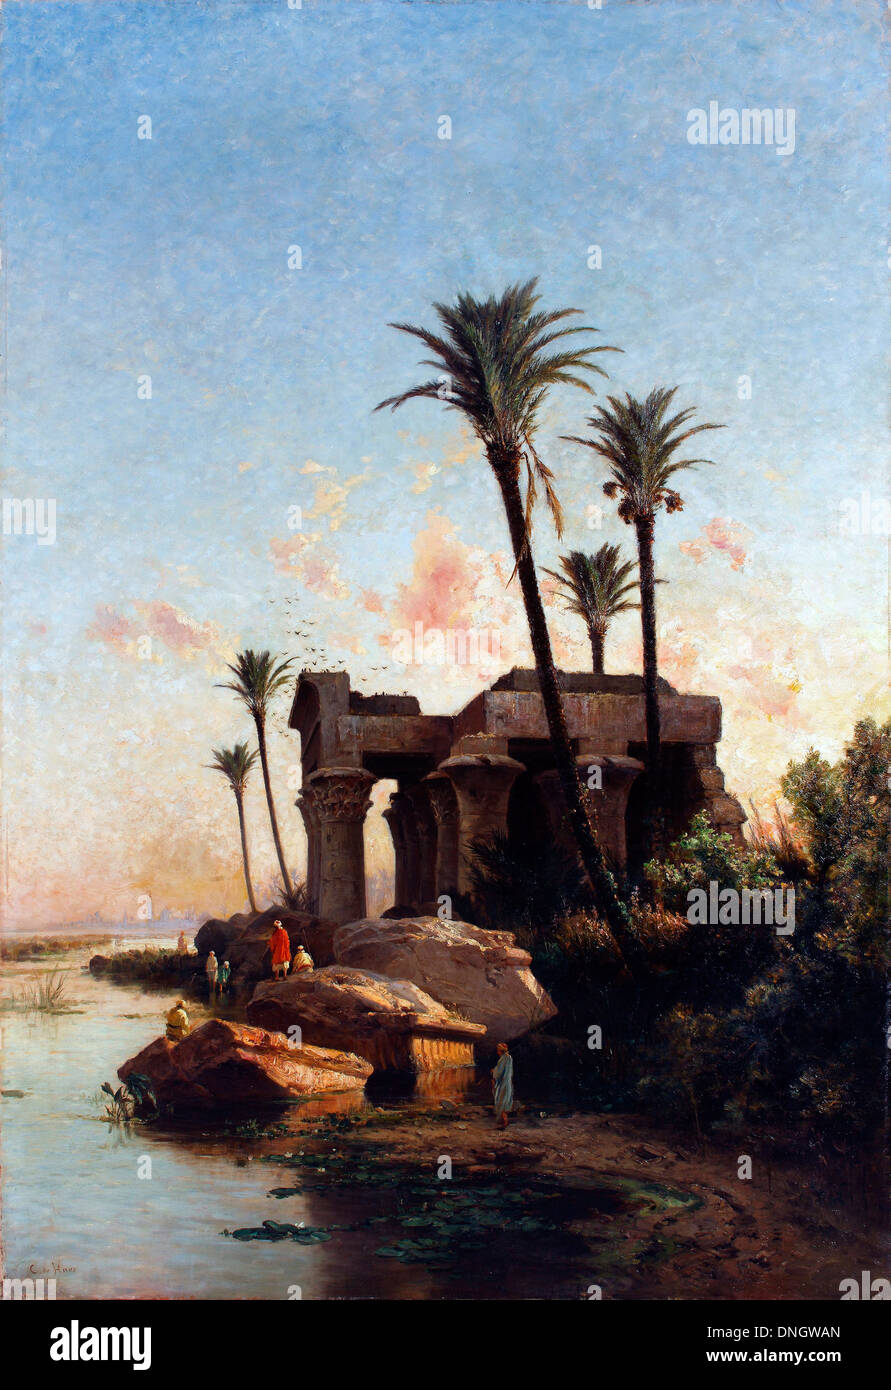 Carlos De Haes, Egypcian 1883 paysage Huile sur toile. Musée national du romantisme, Madrid, Espagne. Banque D'Images